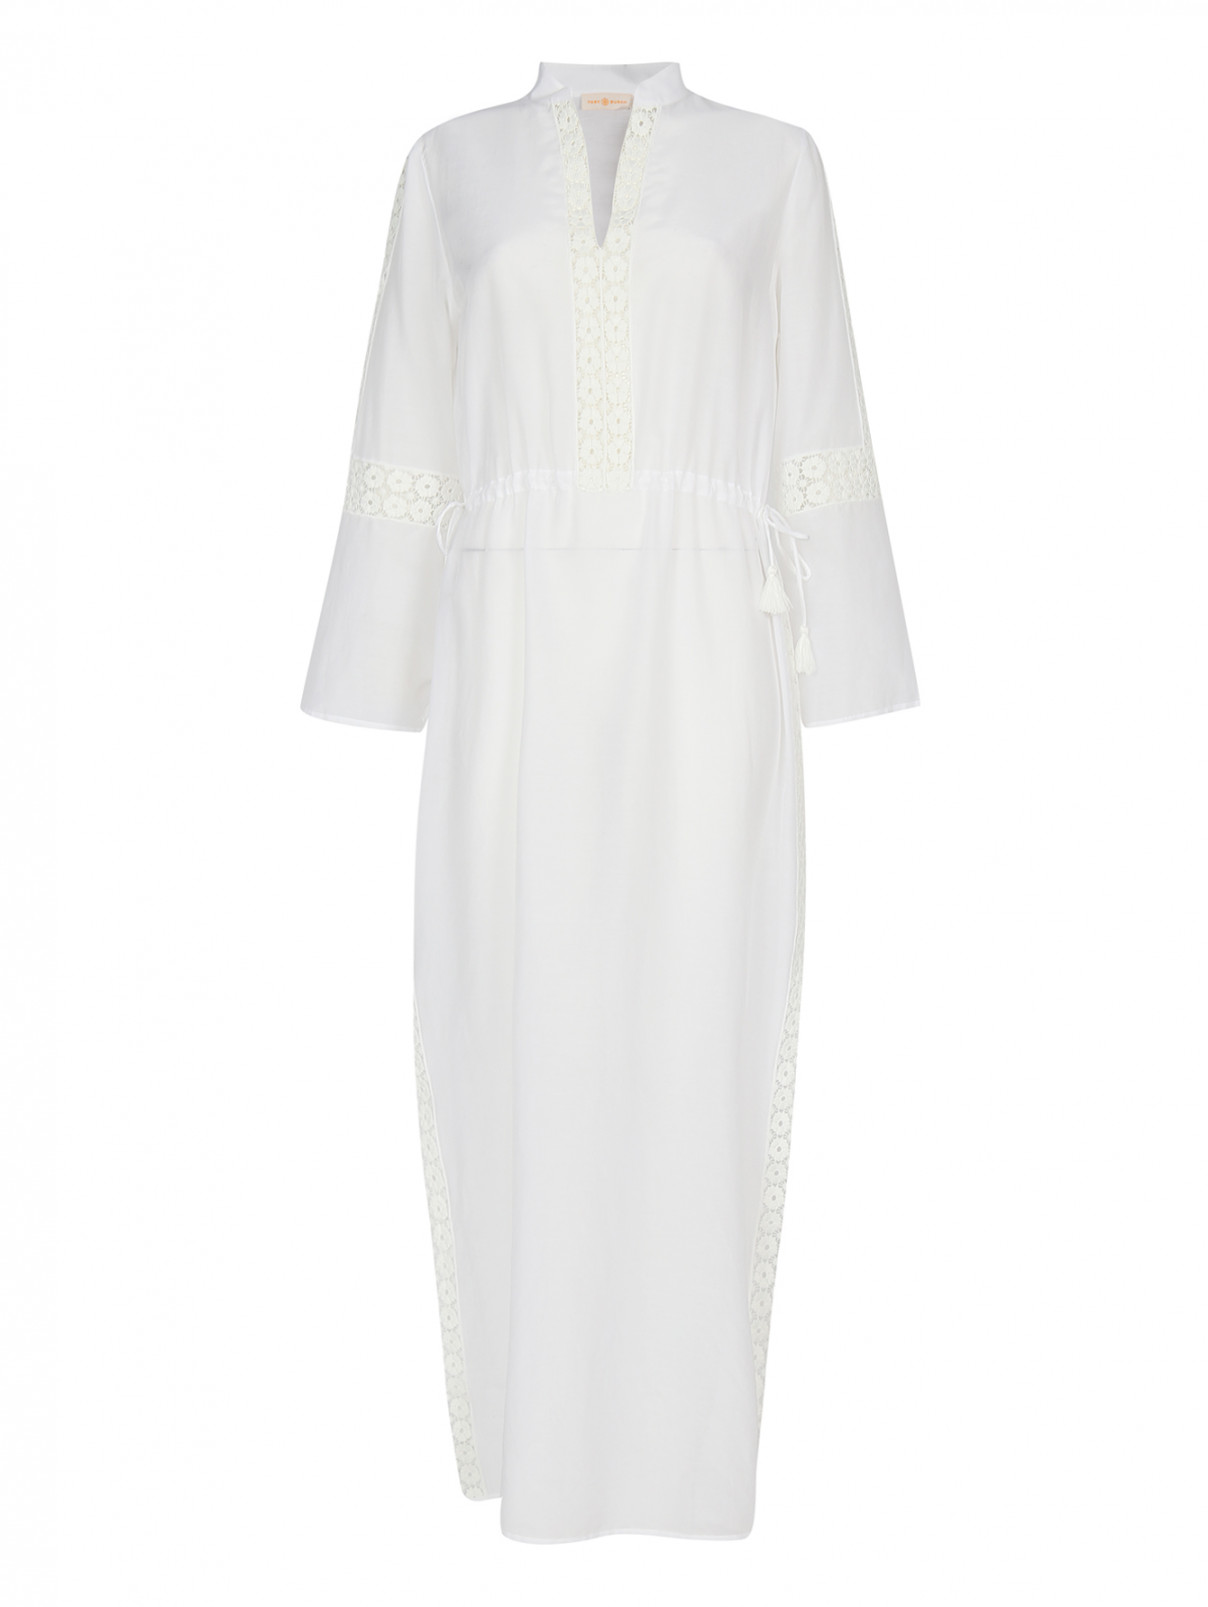 Платье-макси из хлопка с кружевной отделкой Tory Burch  –  Общий вид  – Цвет:  Белый